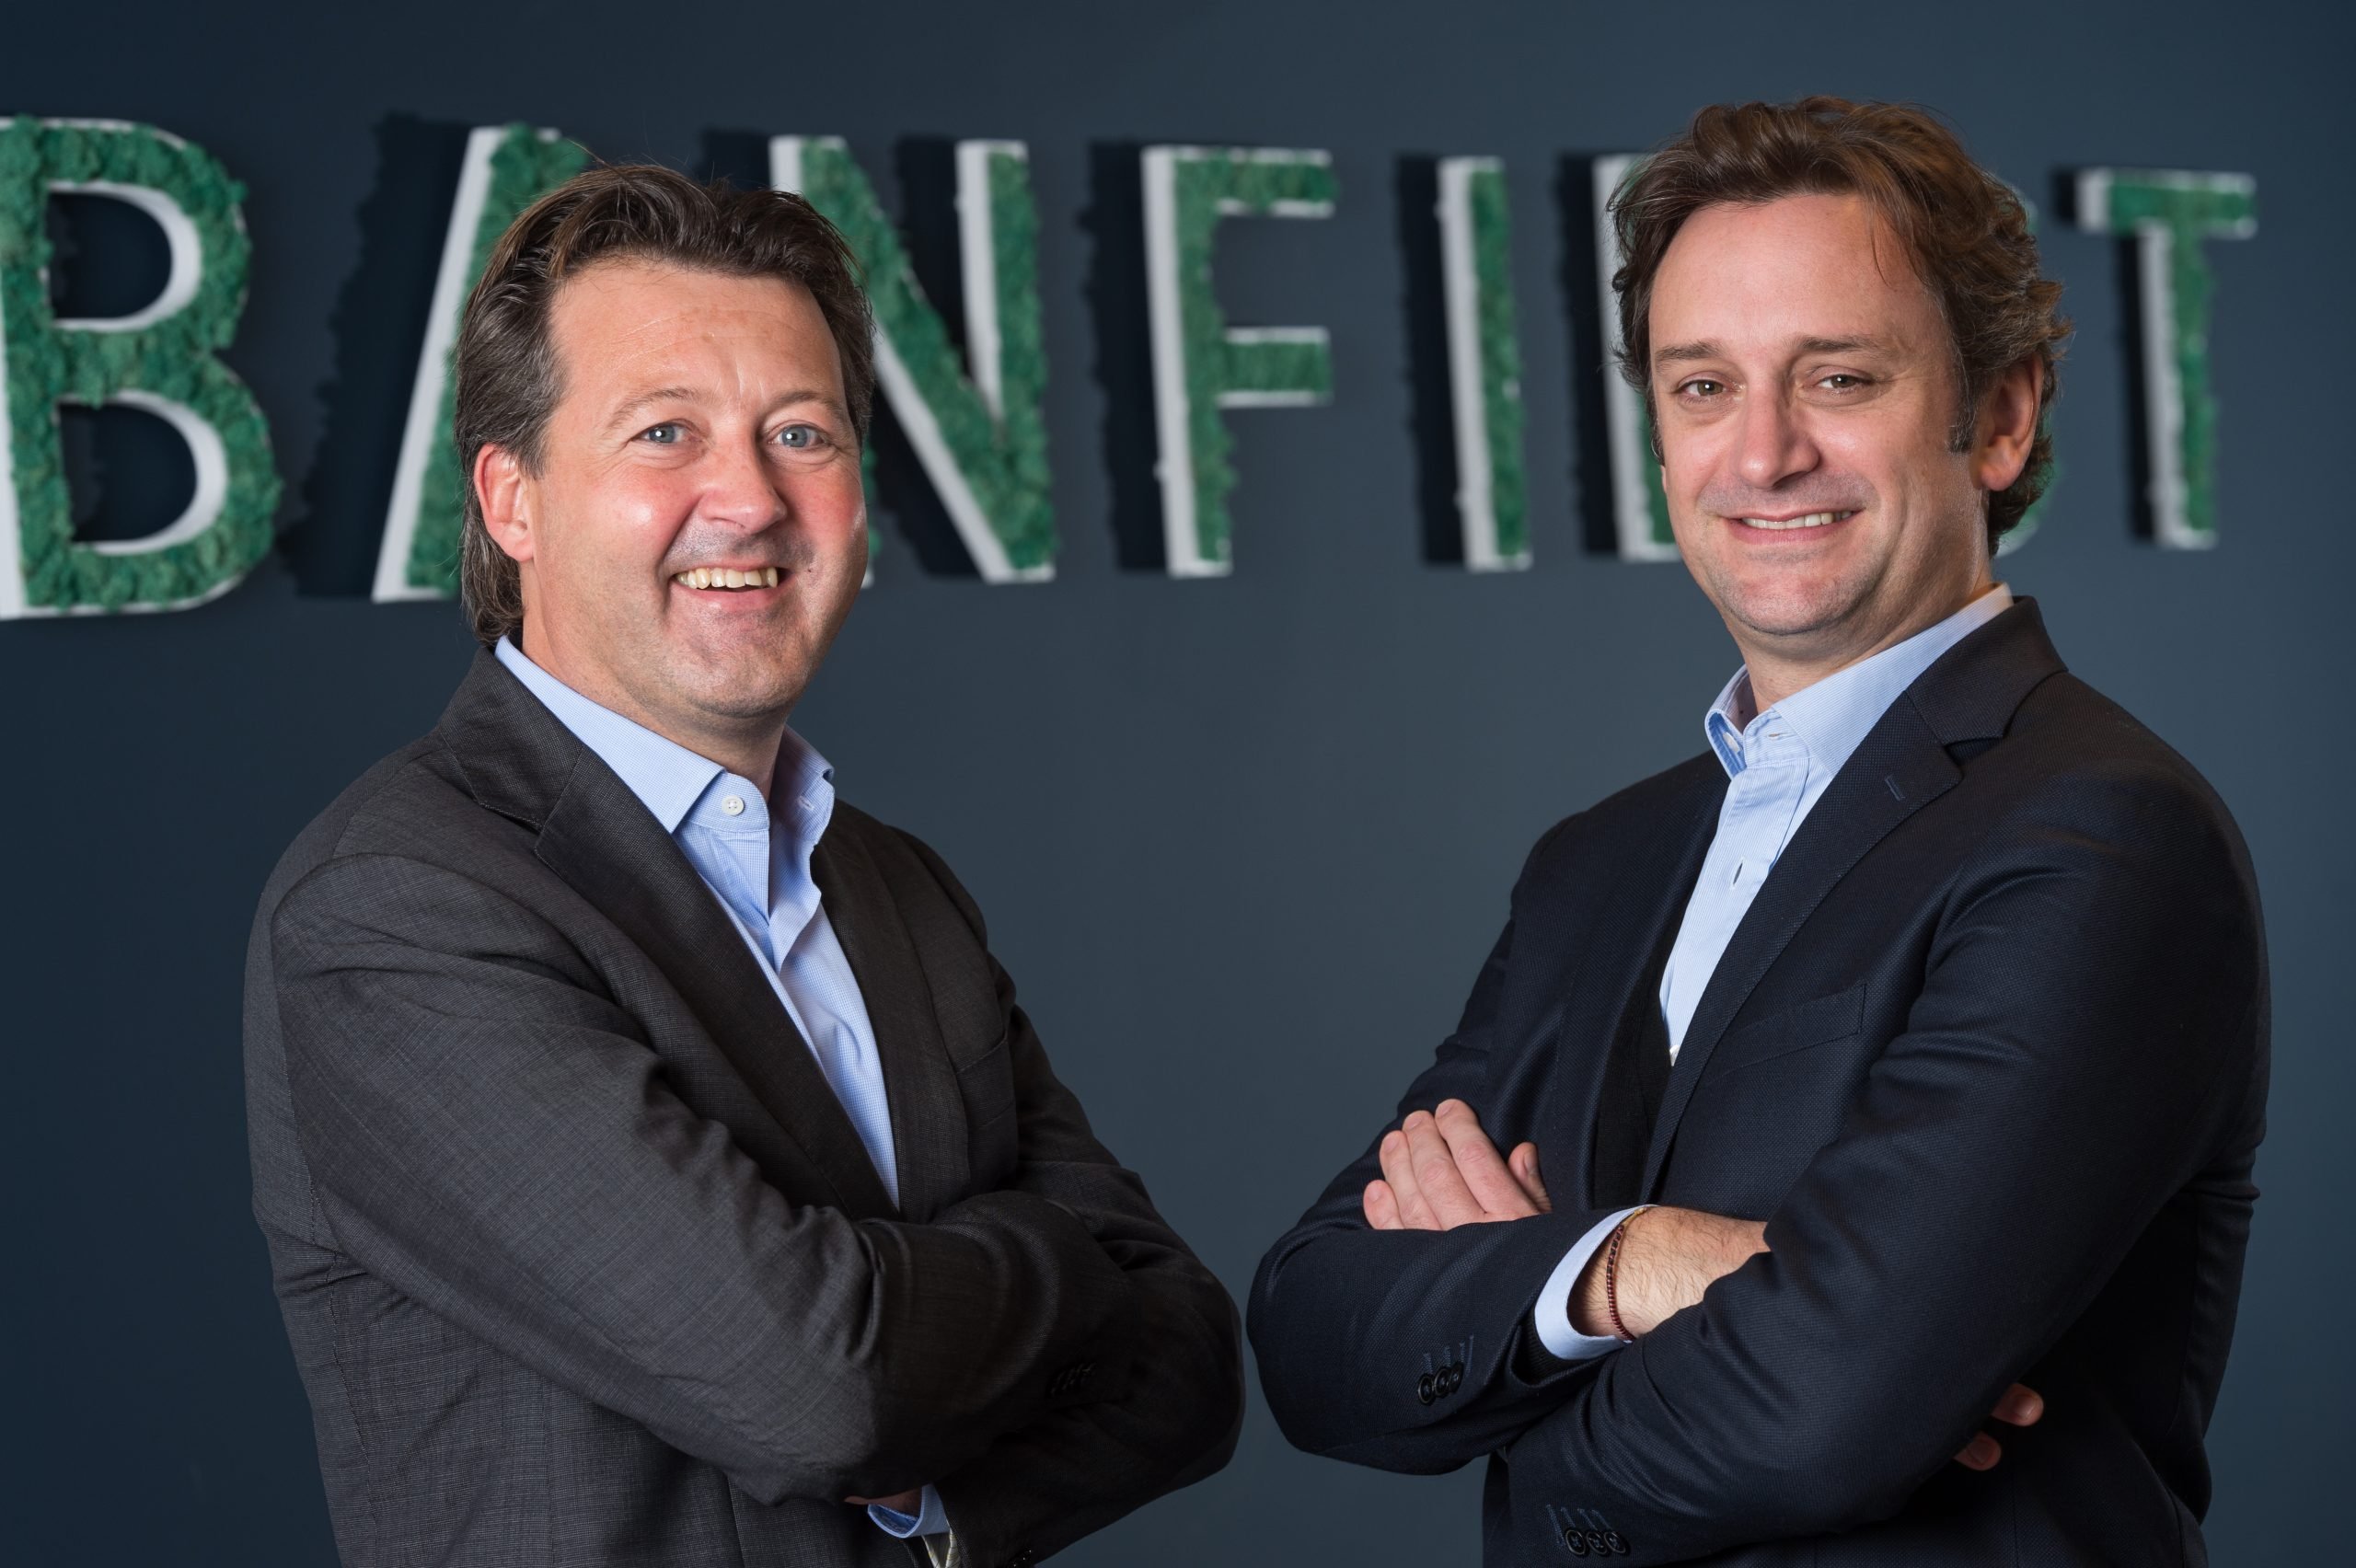 Het zeven jaar oude Frans-Belgische fintechbedrijf iBanFirst heeft in een nieuwe kapitaalronde 21 miljoen euro opgehaald voor verdere groei. IbanFirst is sinds november vorig jaar ook in Nederland actief, toen valutaspecialist NBWM werd overgenomen.